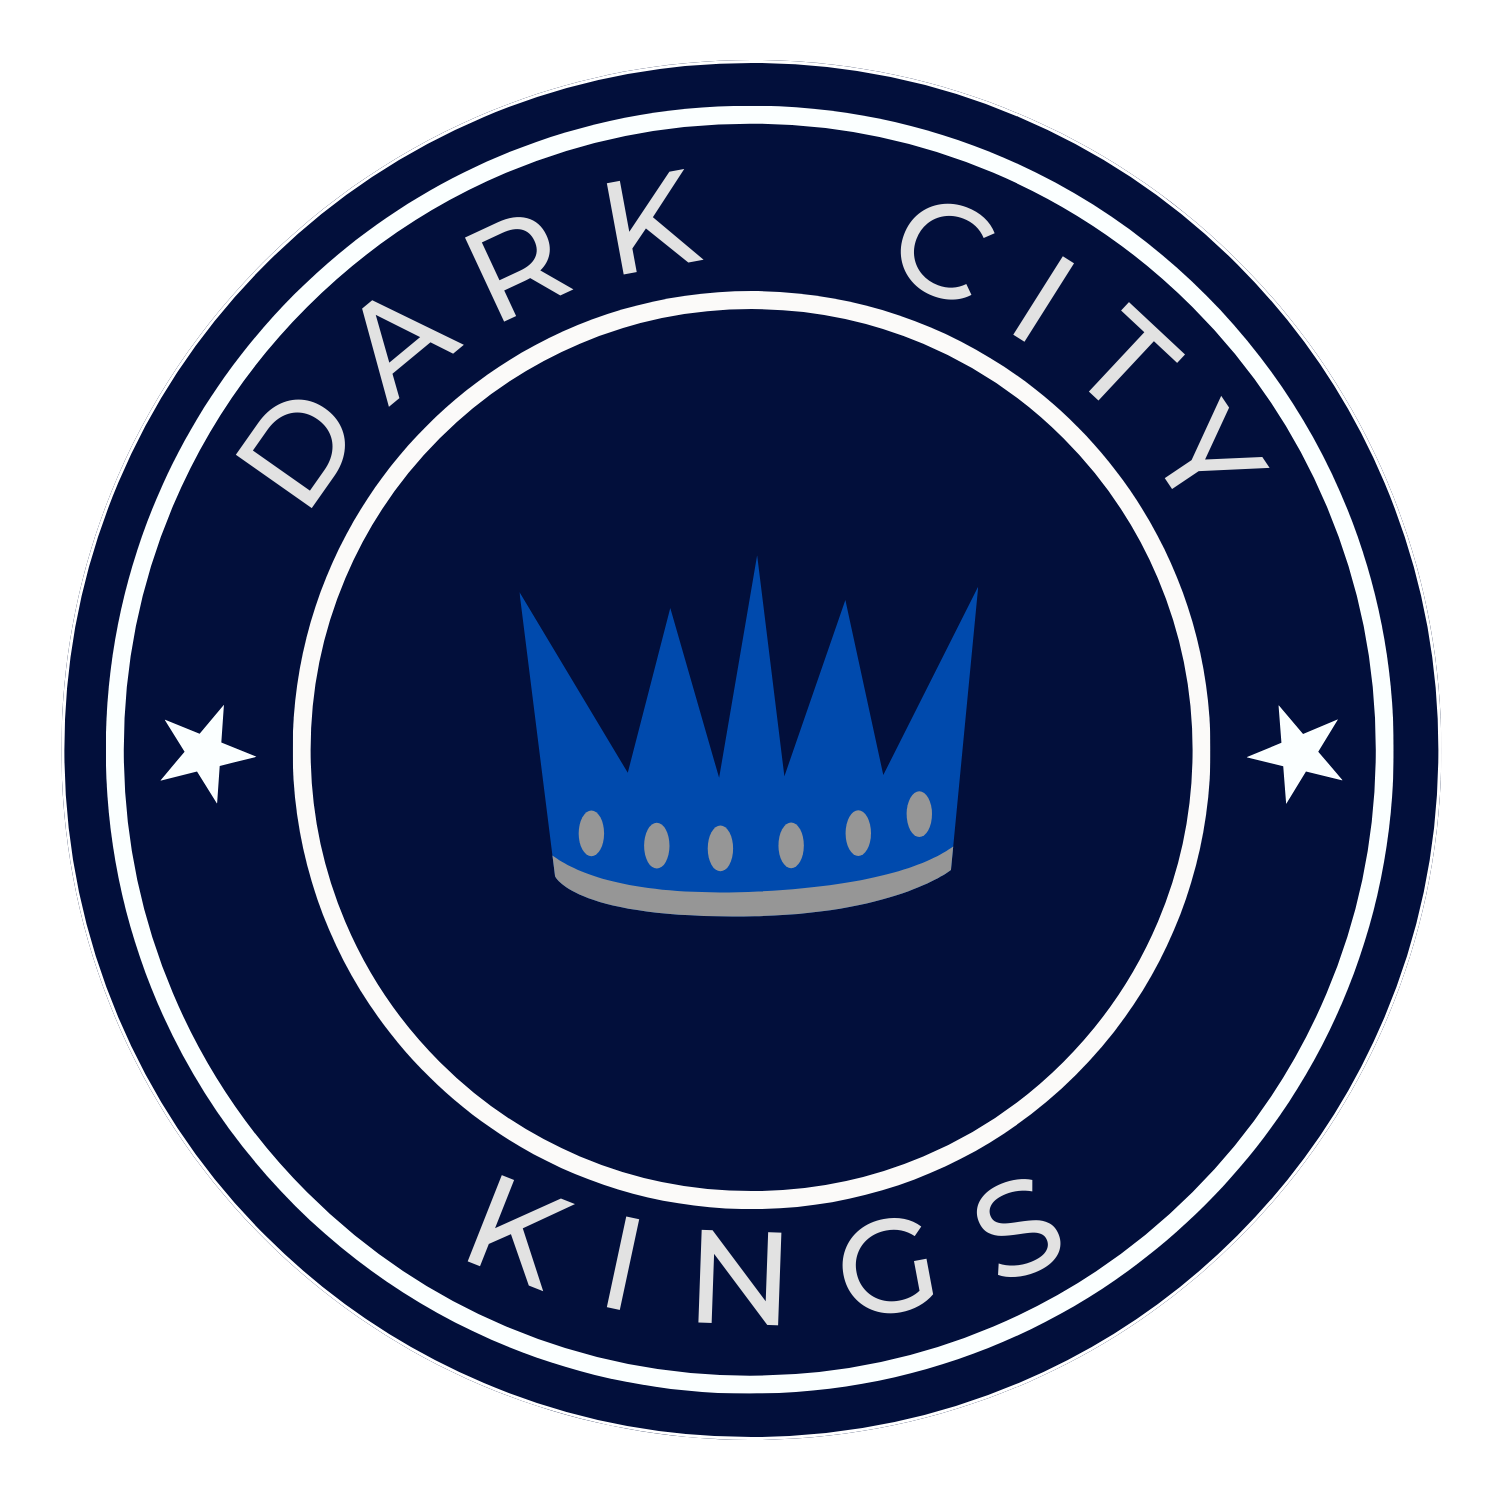 DARK CITY KINGS